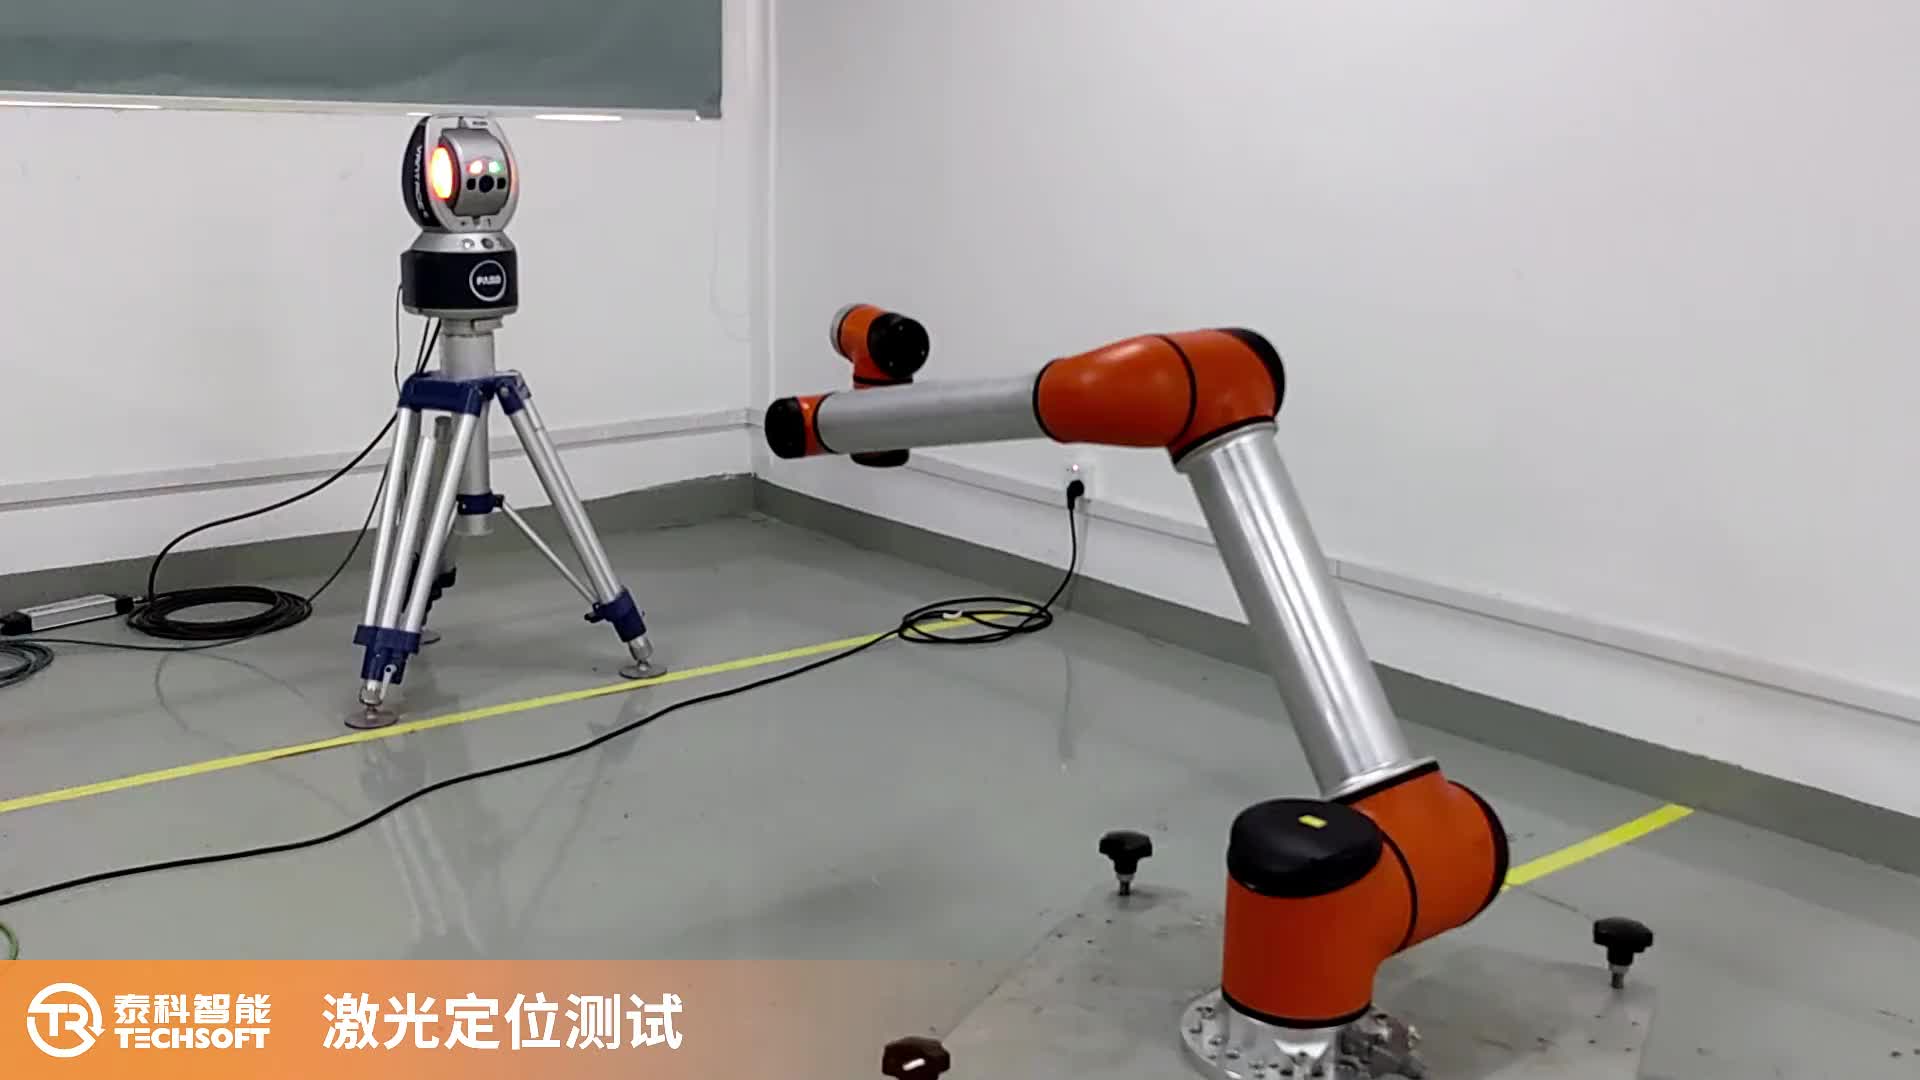 协作机器人利用激光定位测试进行精准调整定位精度#六轴协作机器人 #定位 #激光测试 #协作机器人 